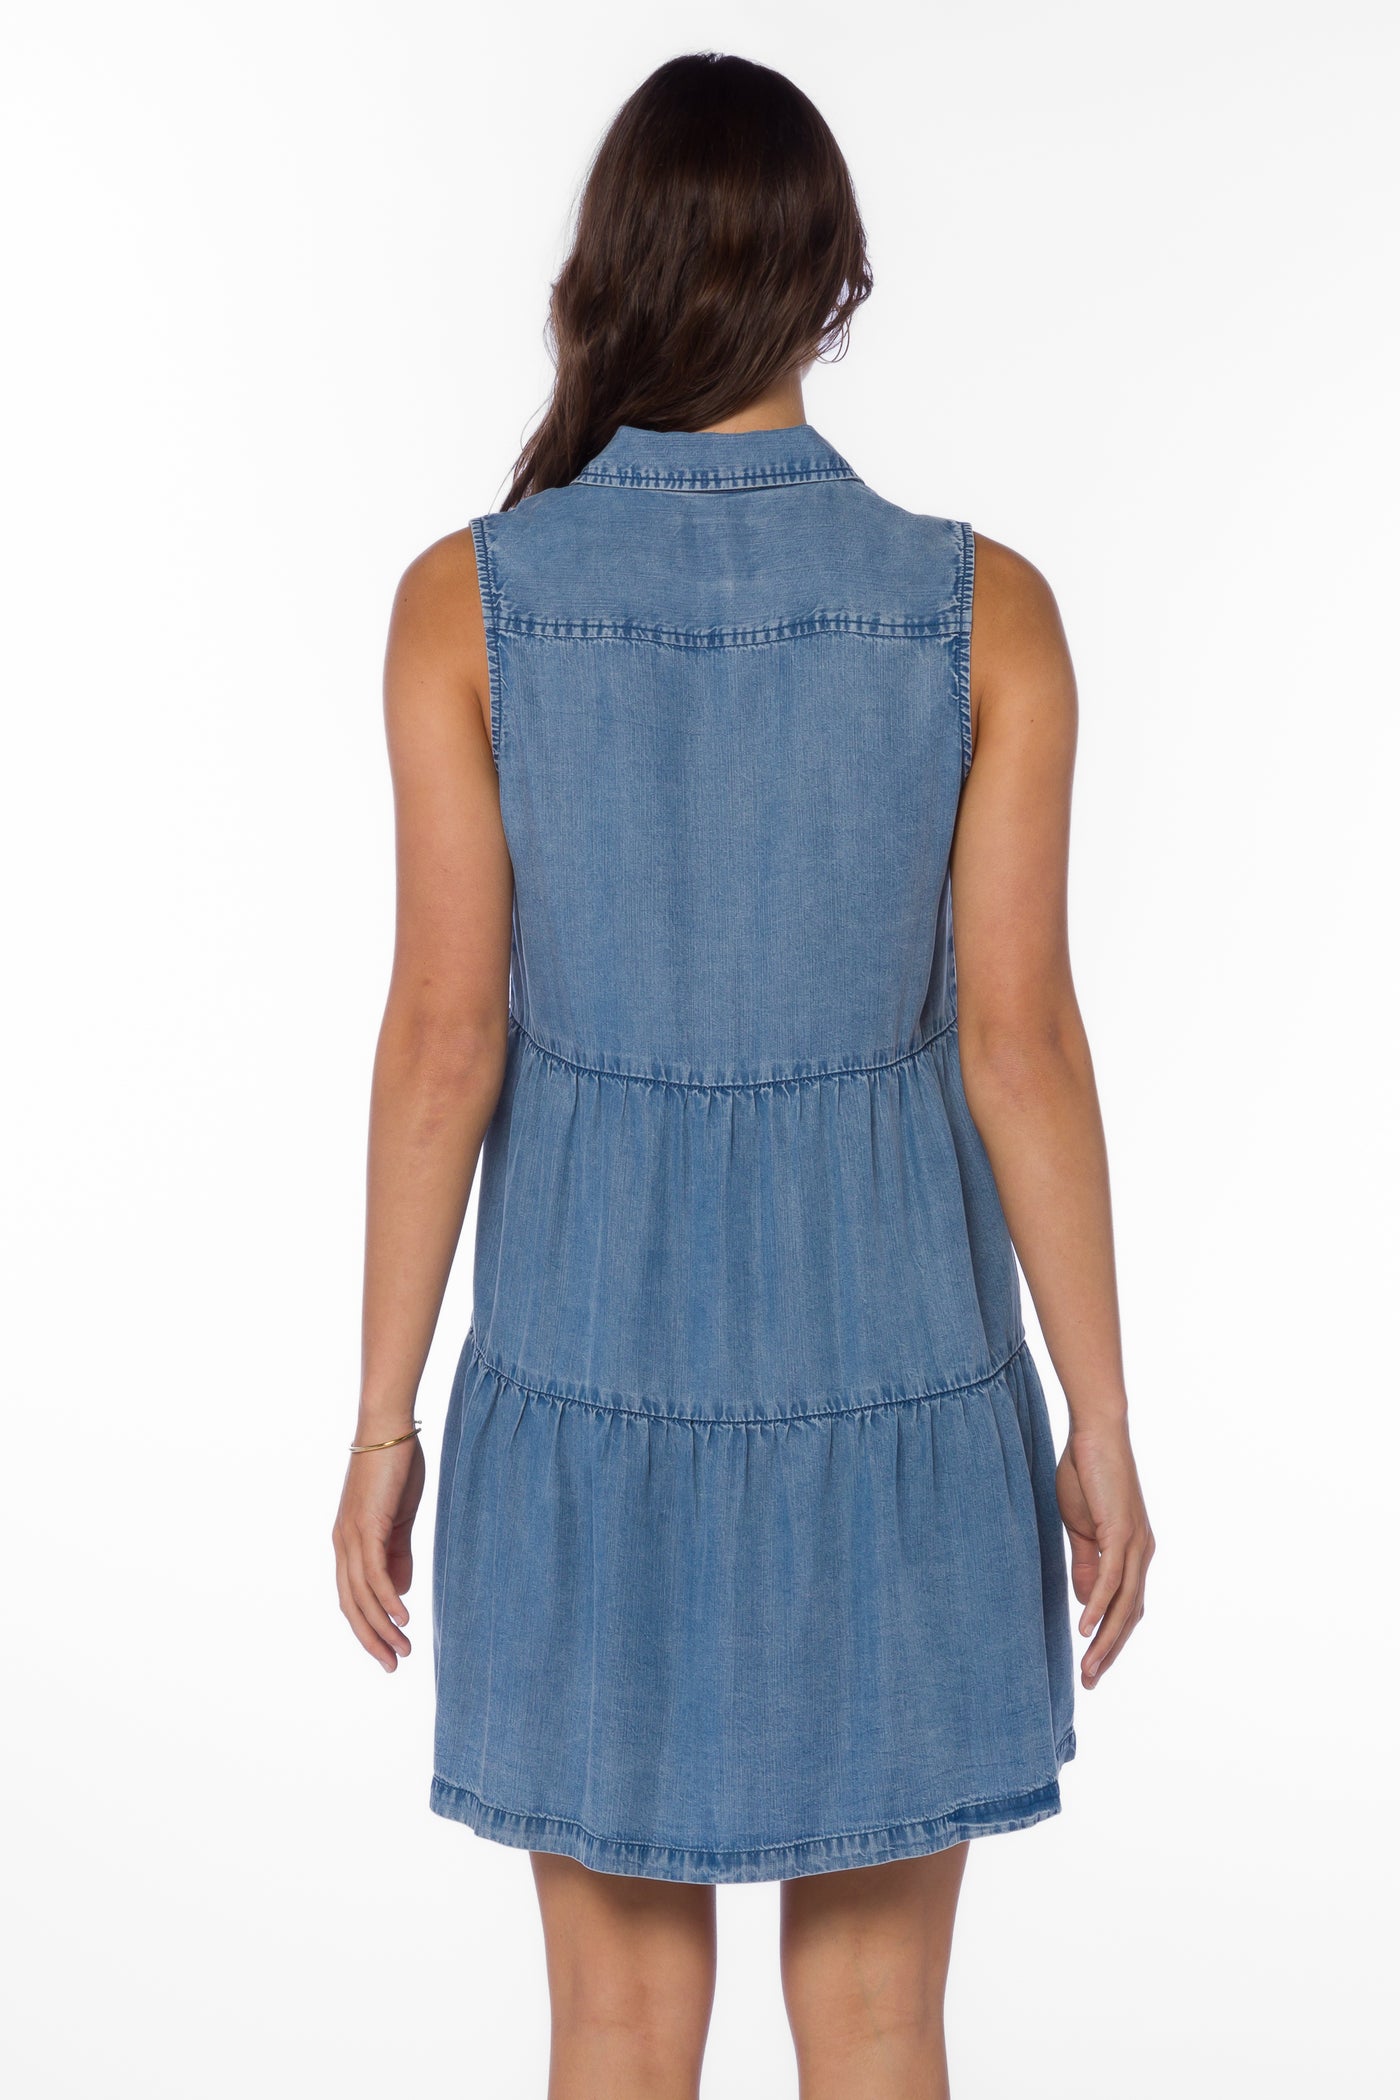 Collette Blue Chambray Dress - Dresses - Velvet Heart Clothing